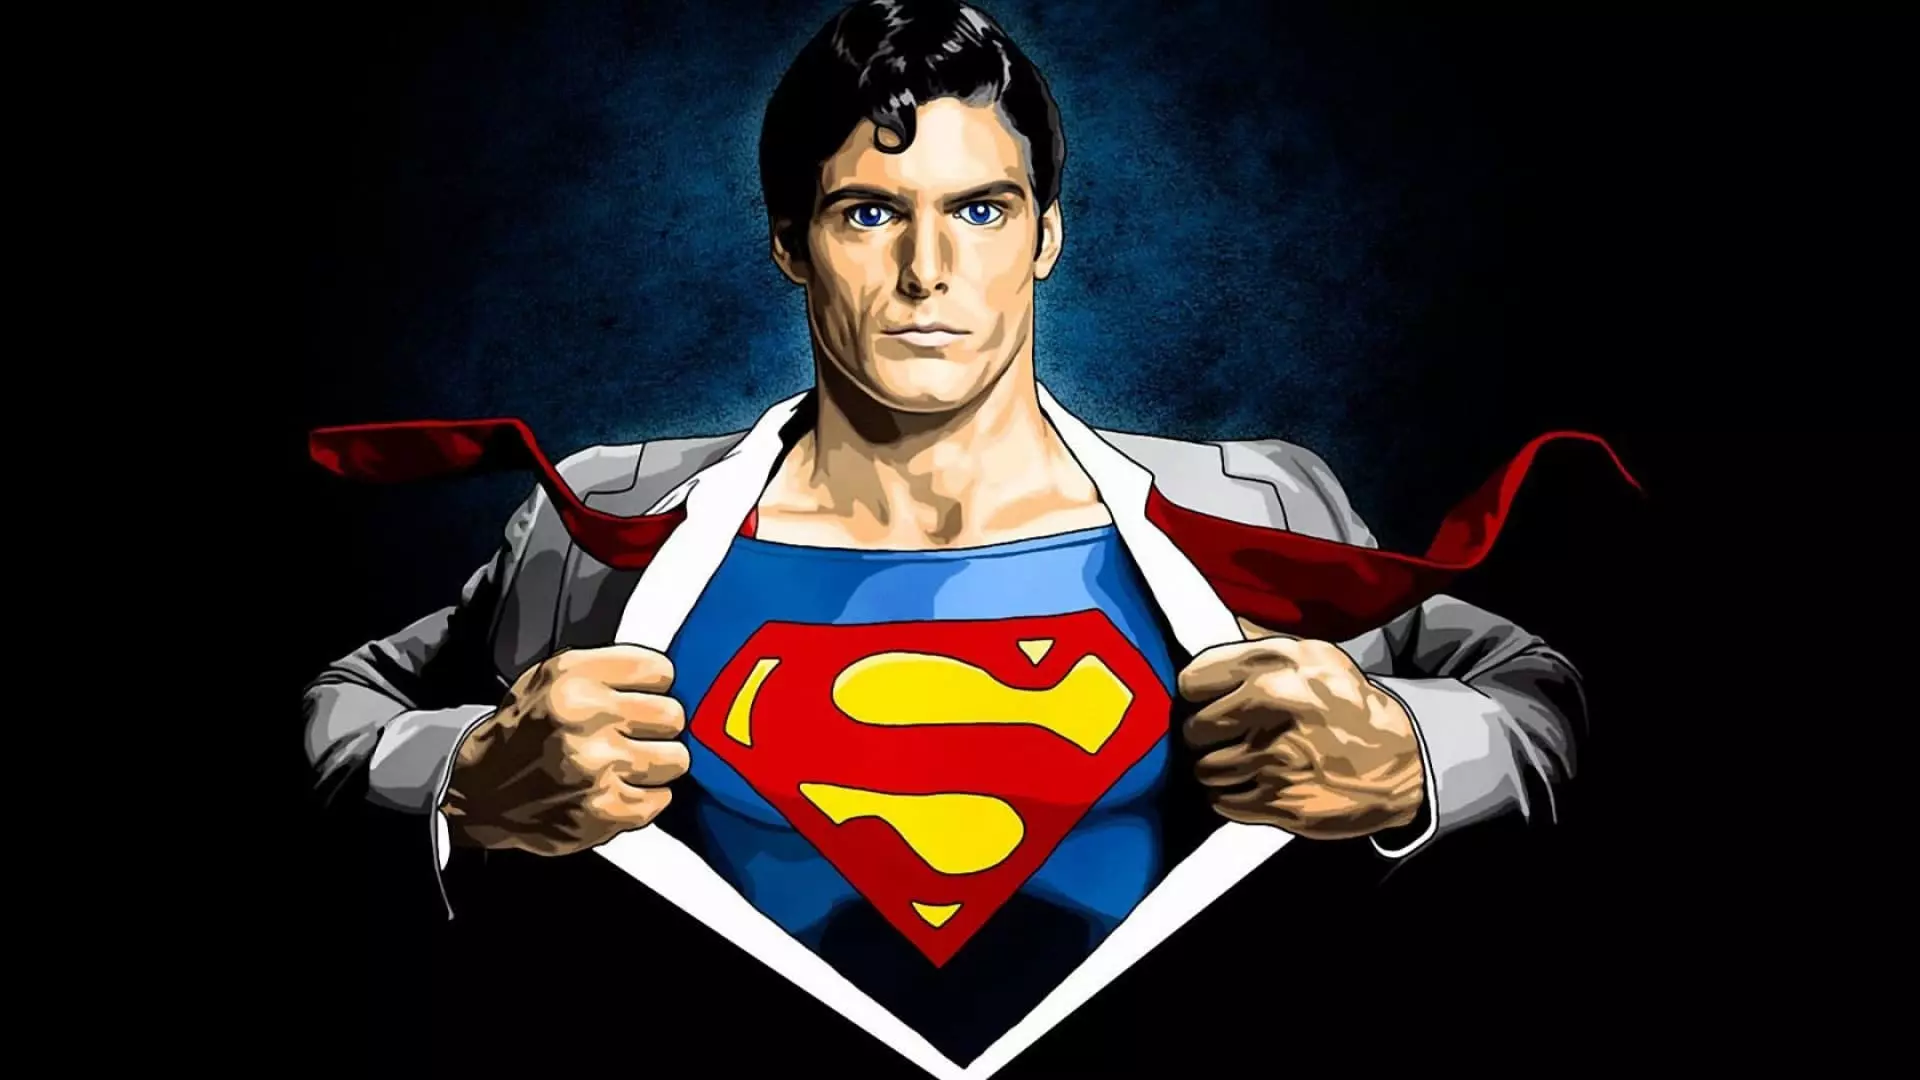 سوپرمن - تاریخچه، عکس ها، فیلم ها، بازیگران، کمیک